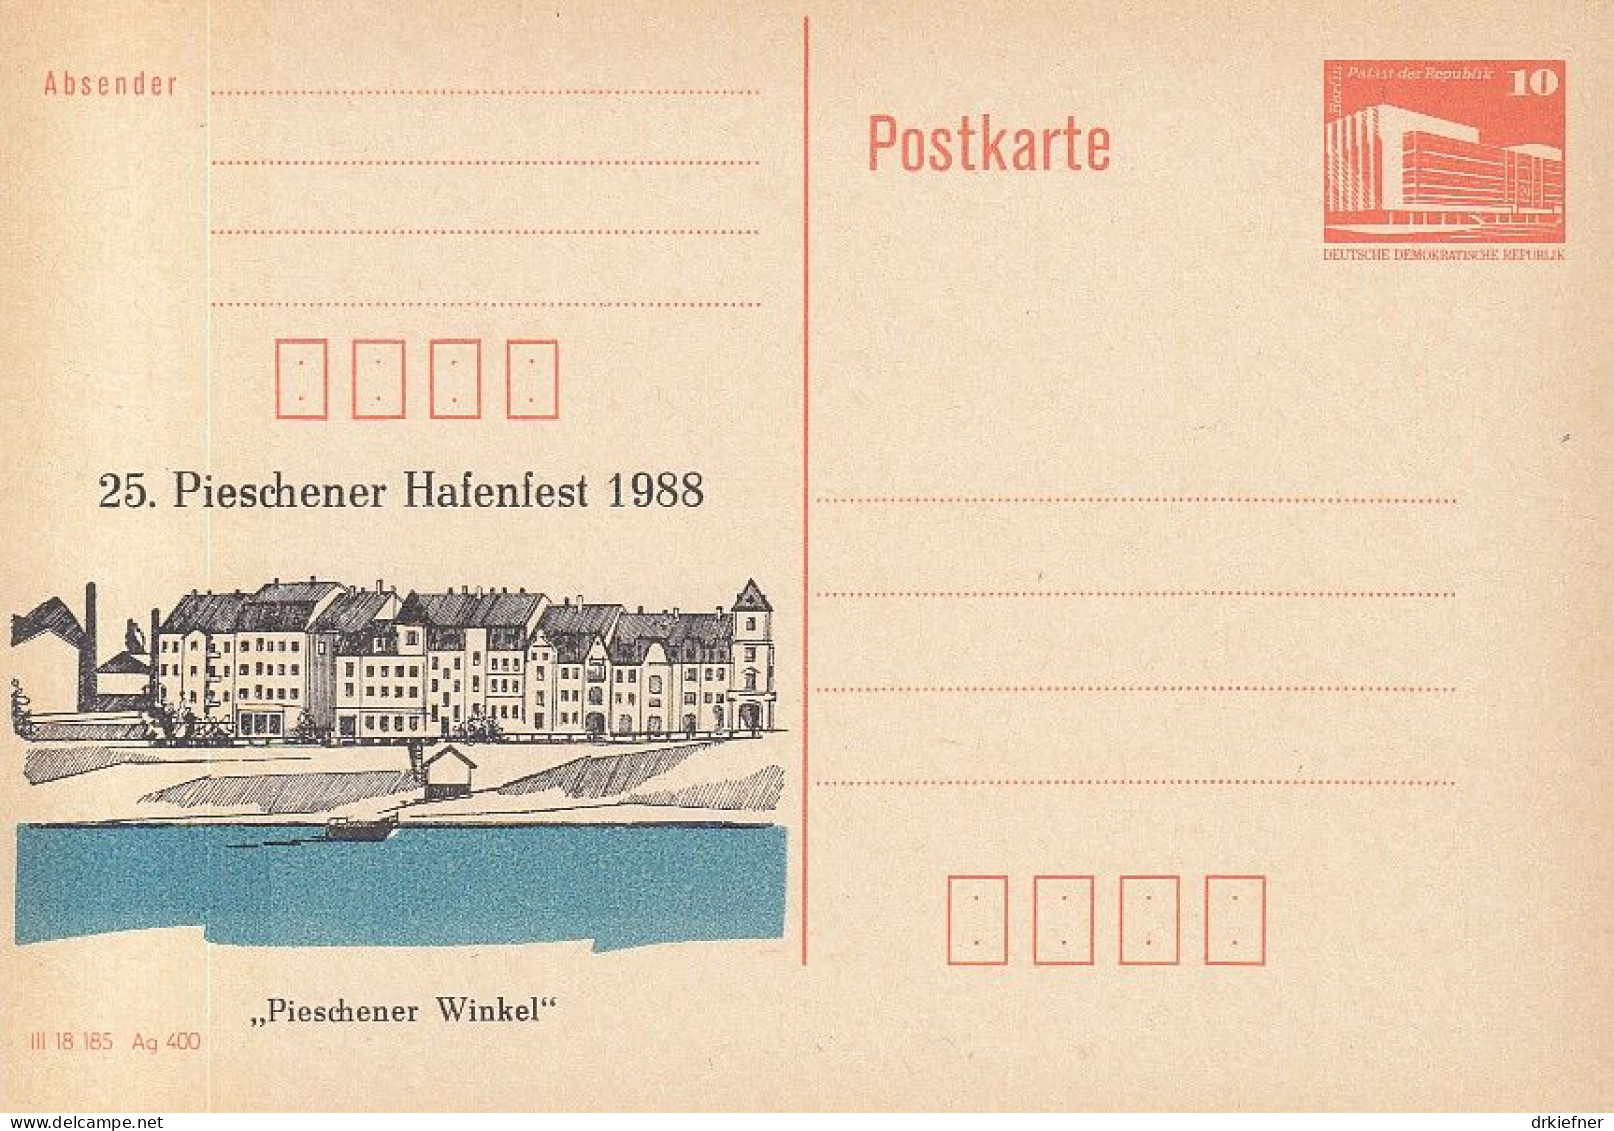 DDR PP 19 II, Ungebraucht, 25. Pieschener Hafenfest, Dresden-Pieschen, 1988 - Private Postcards - Mint